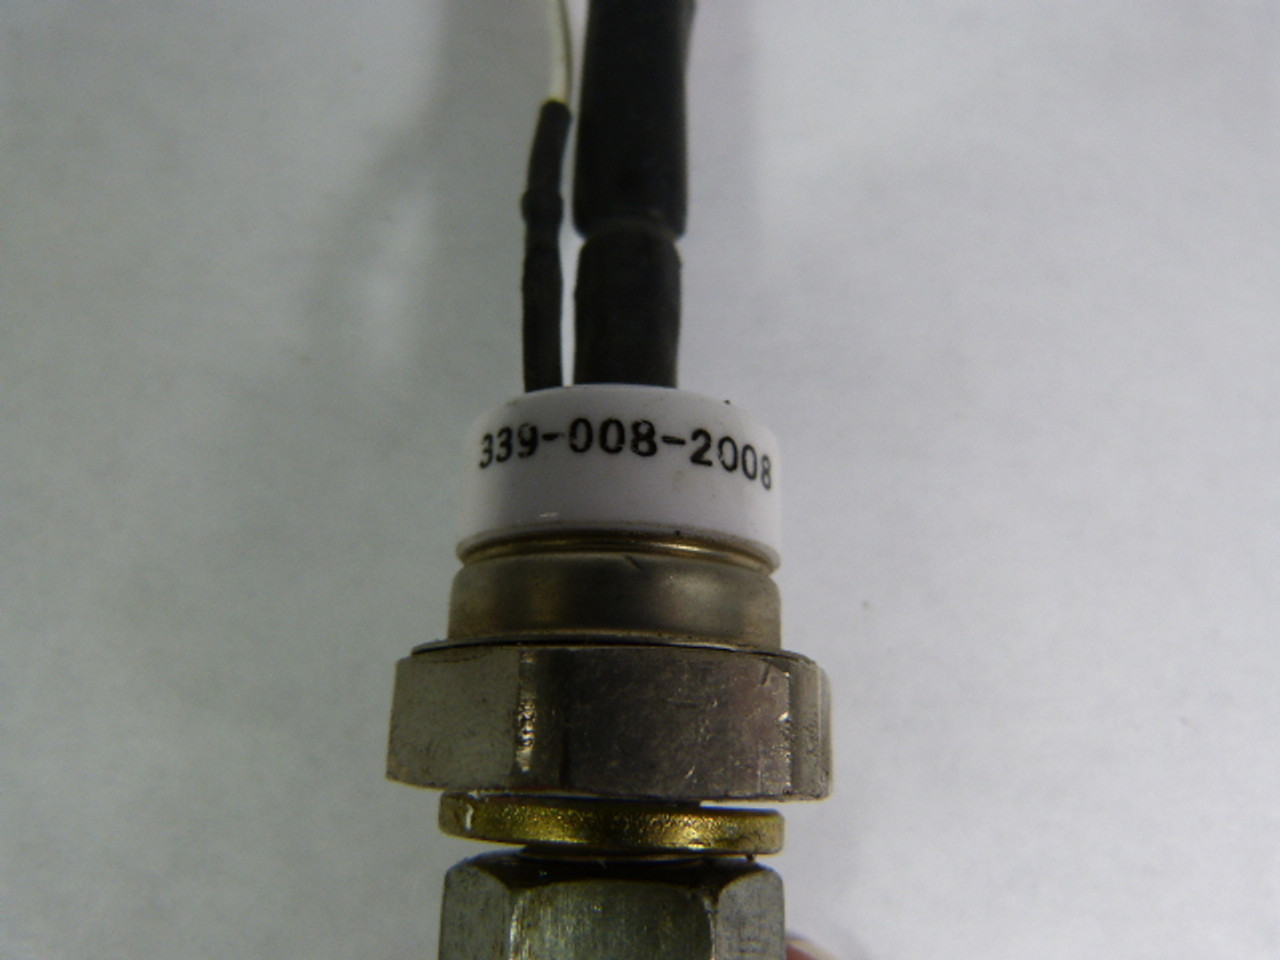 Semikron 339-008-2008 Thyristor USED